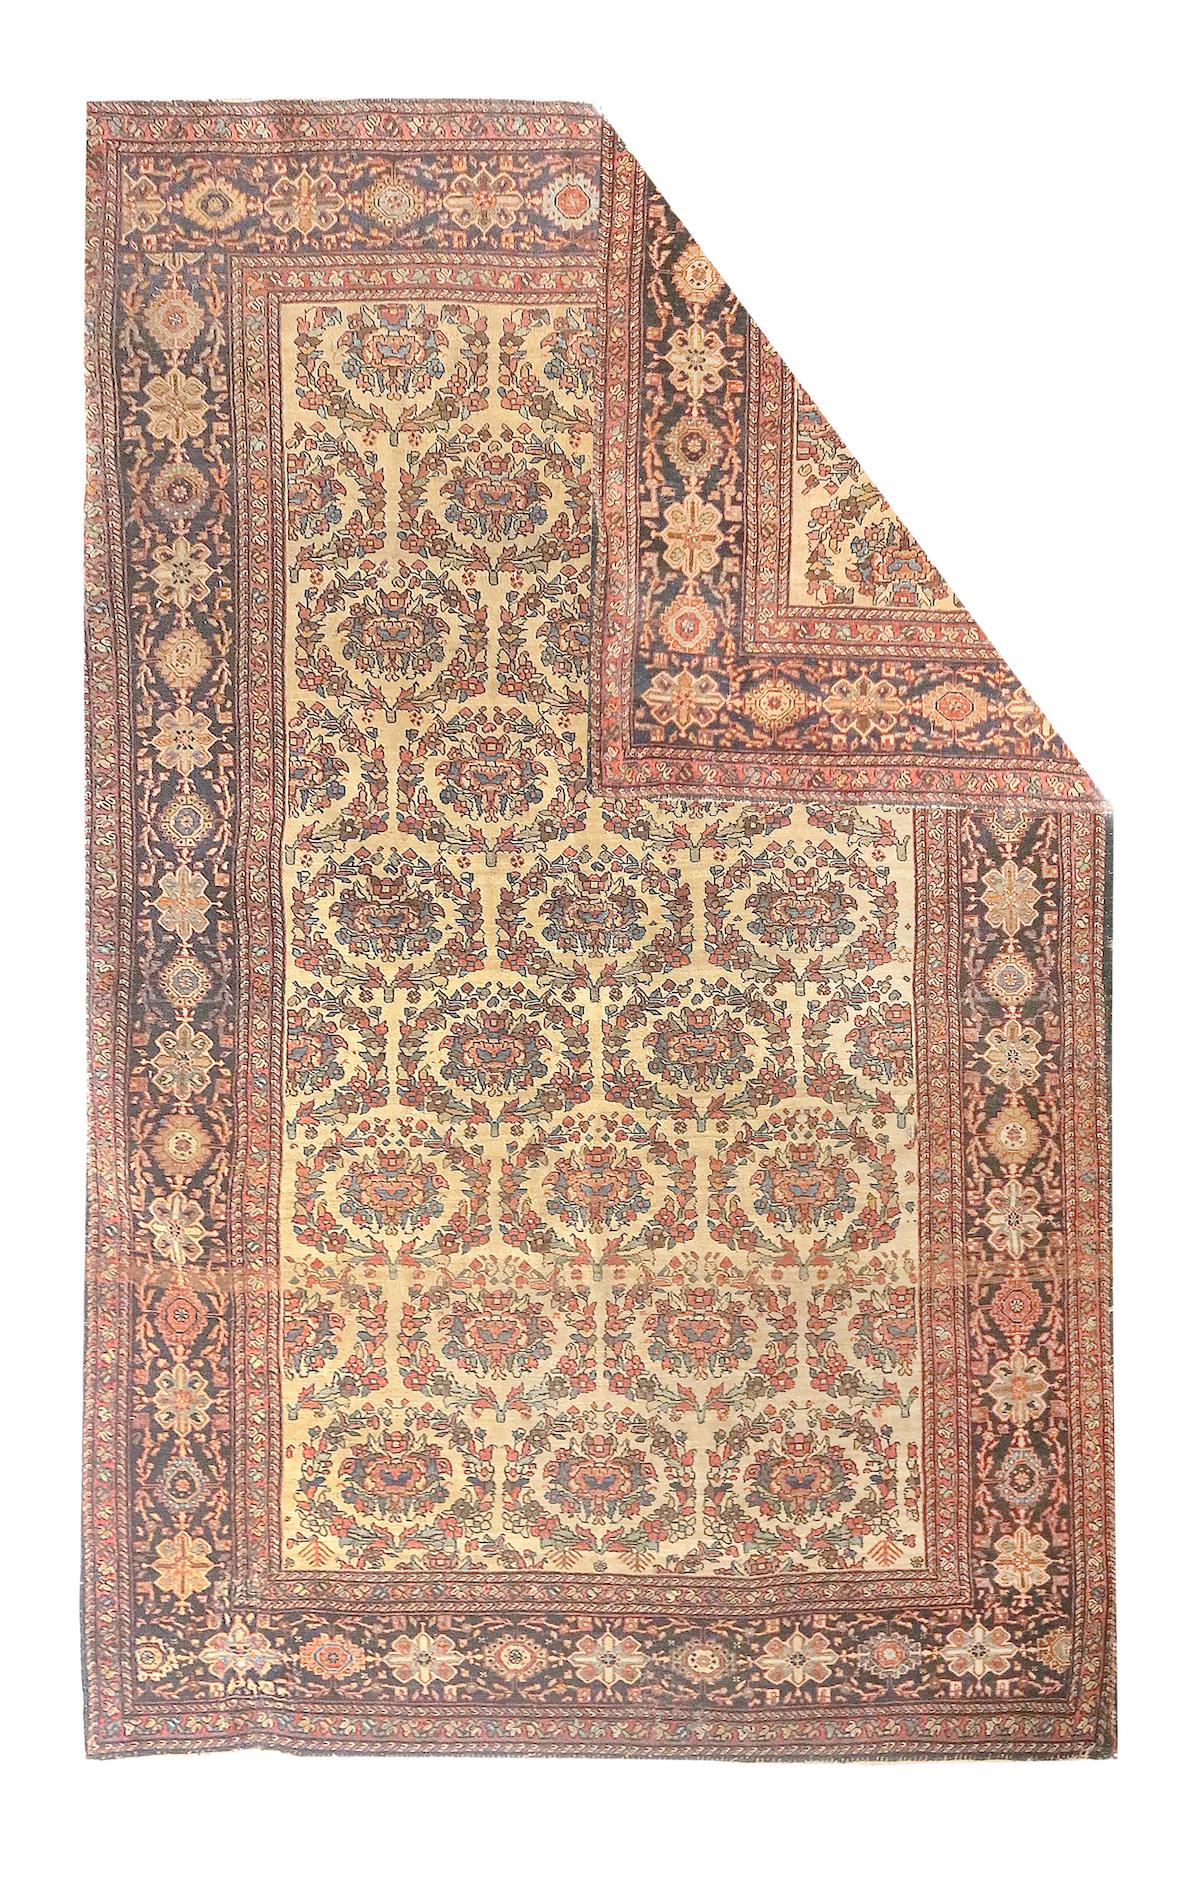 Antique Sarouk rug measures 4'1'' x 6'6''.